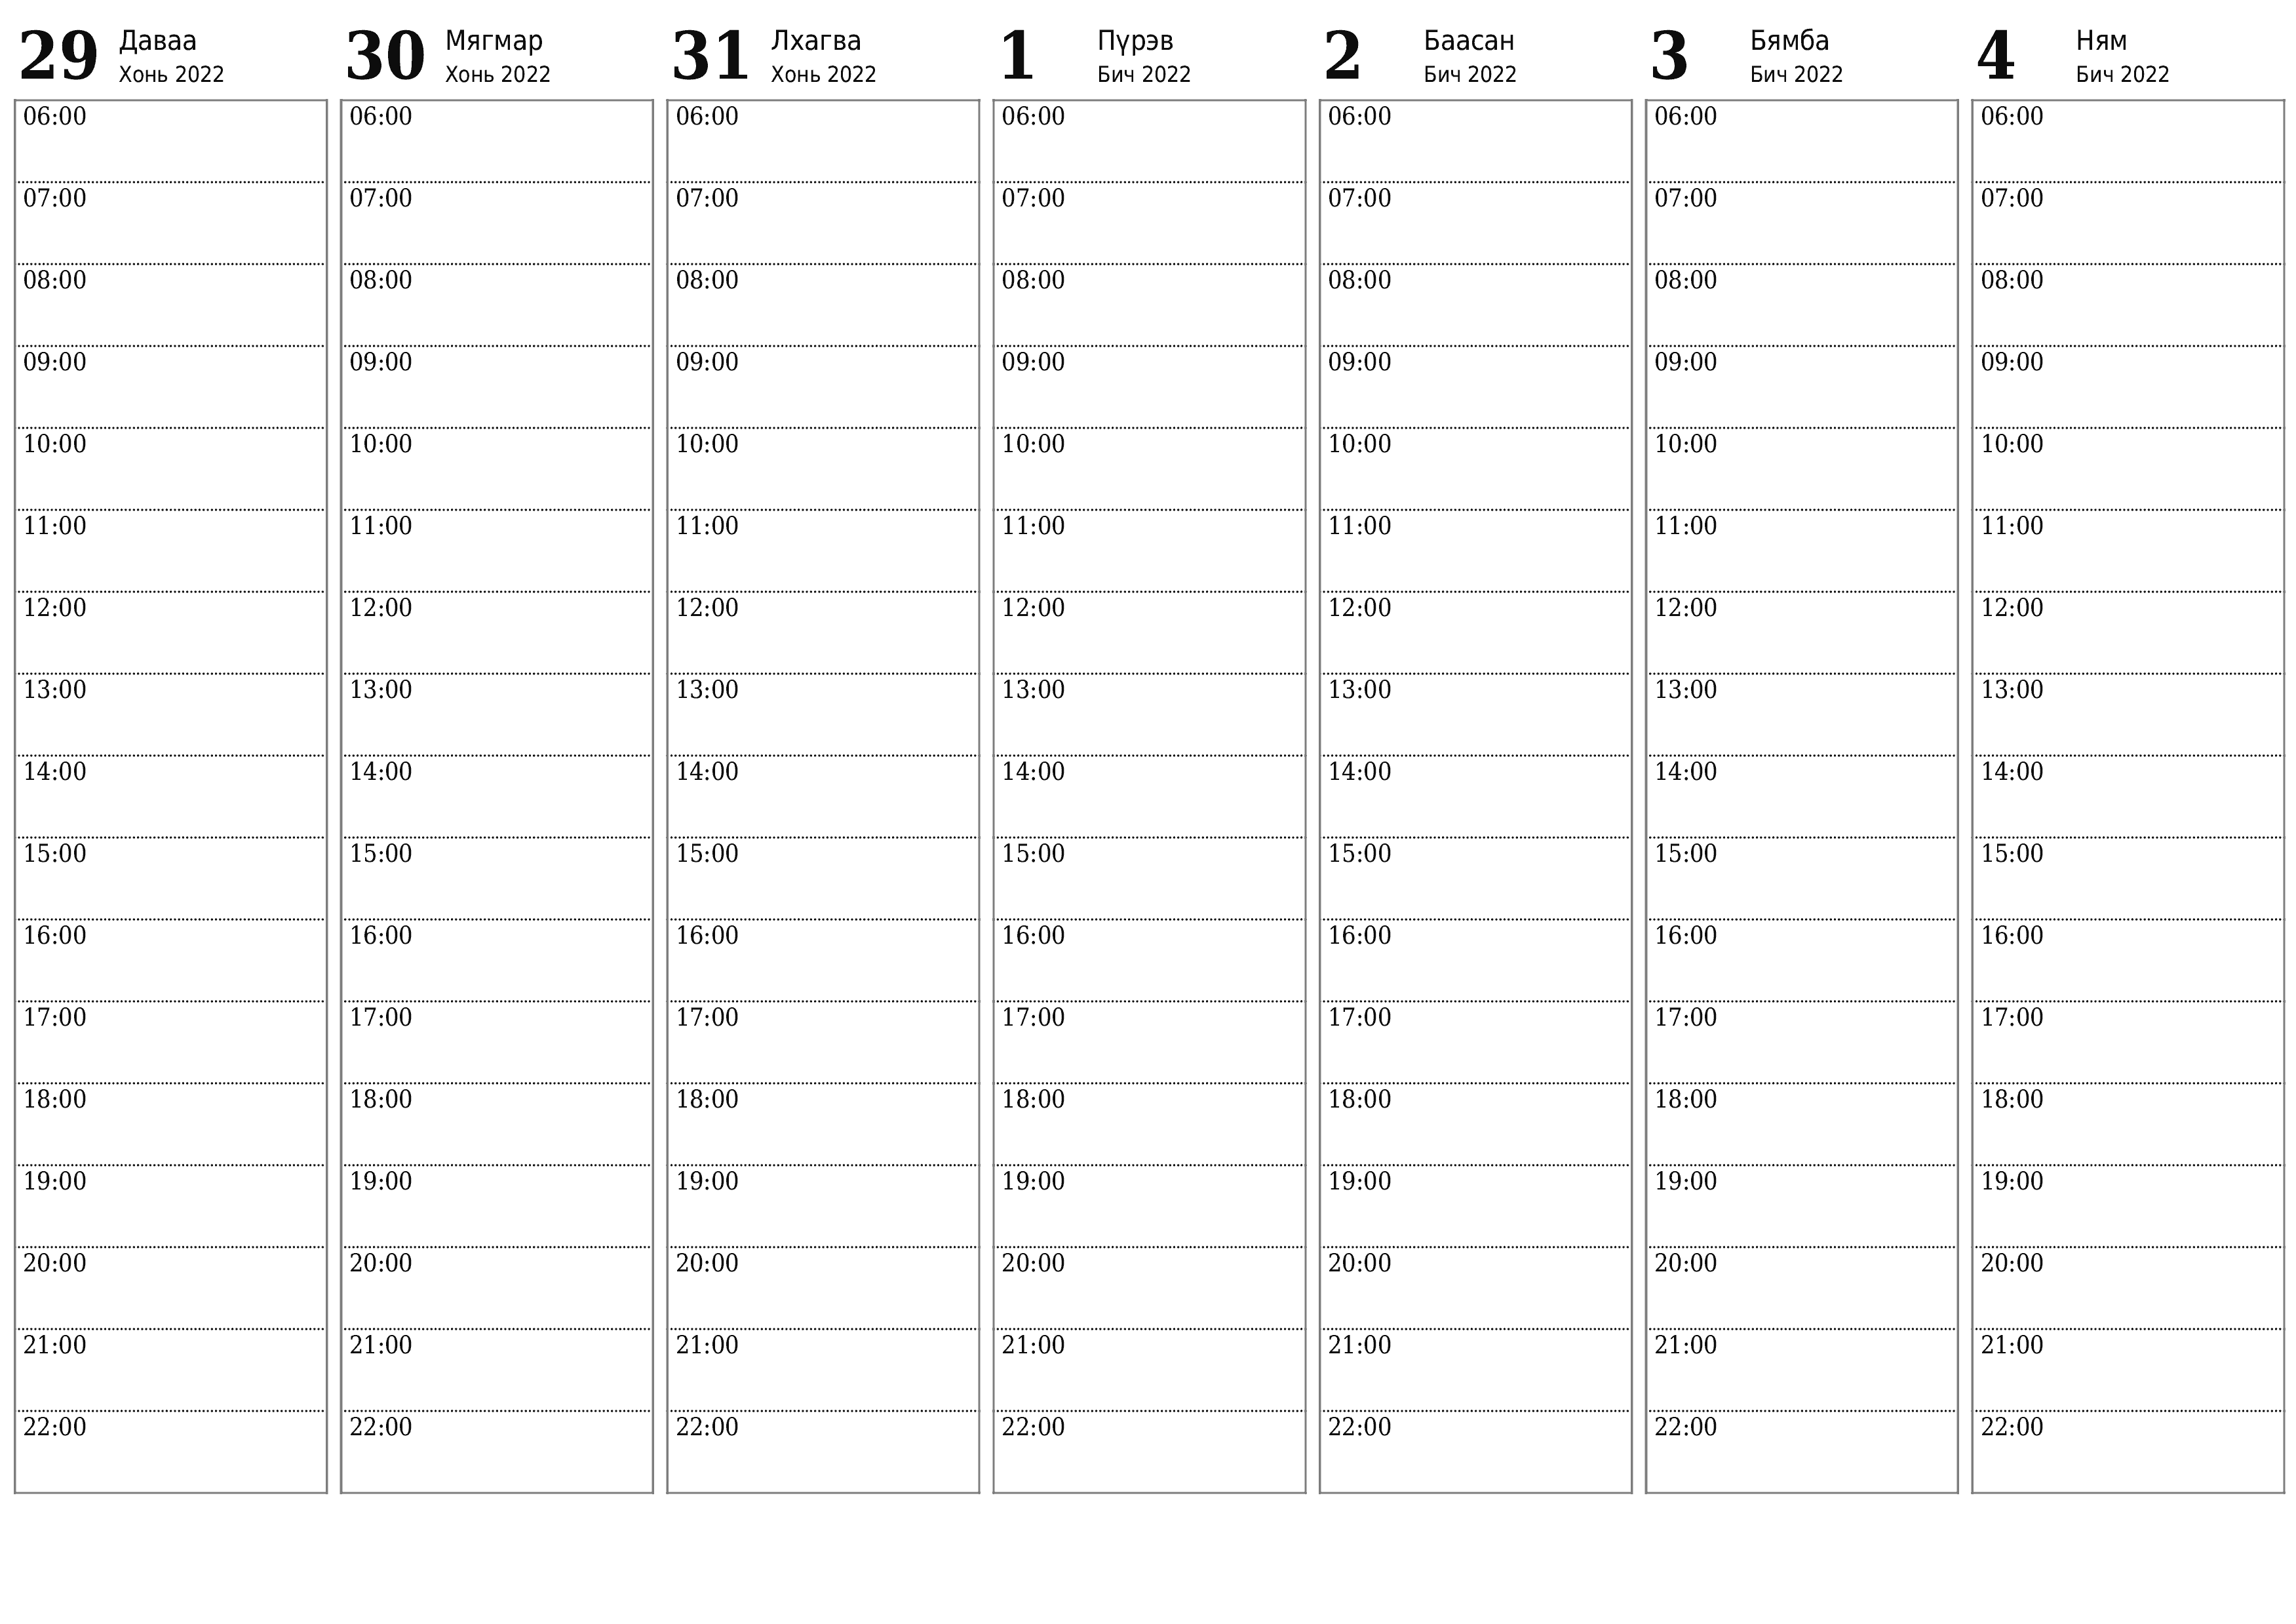 хэвлэх боломжтой ханын календарийн загвар үнэгүй хэвтээ Долоо хоног бүр төлөвлөгч хуанли Бич (Бич) 2022